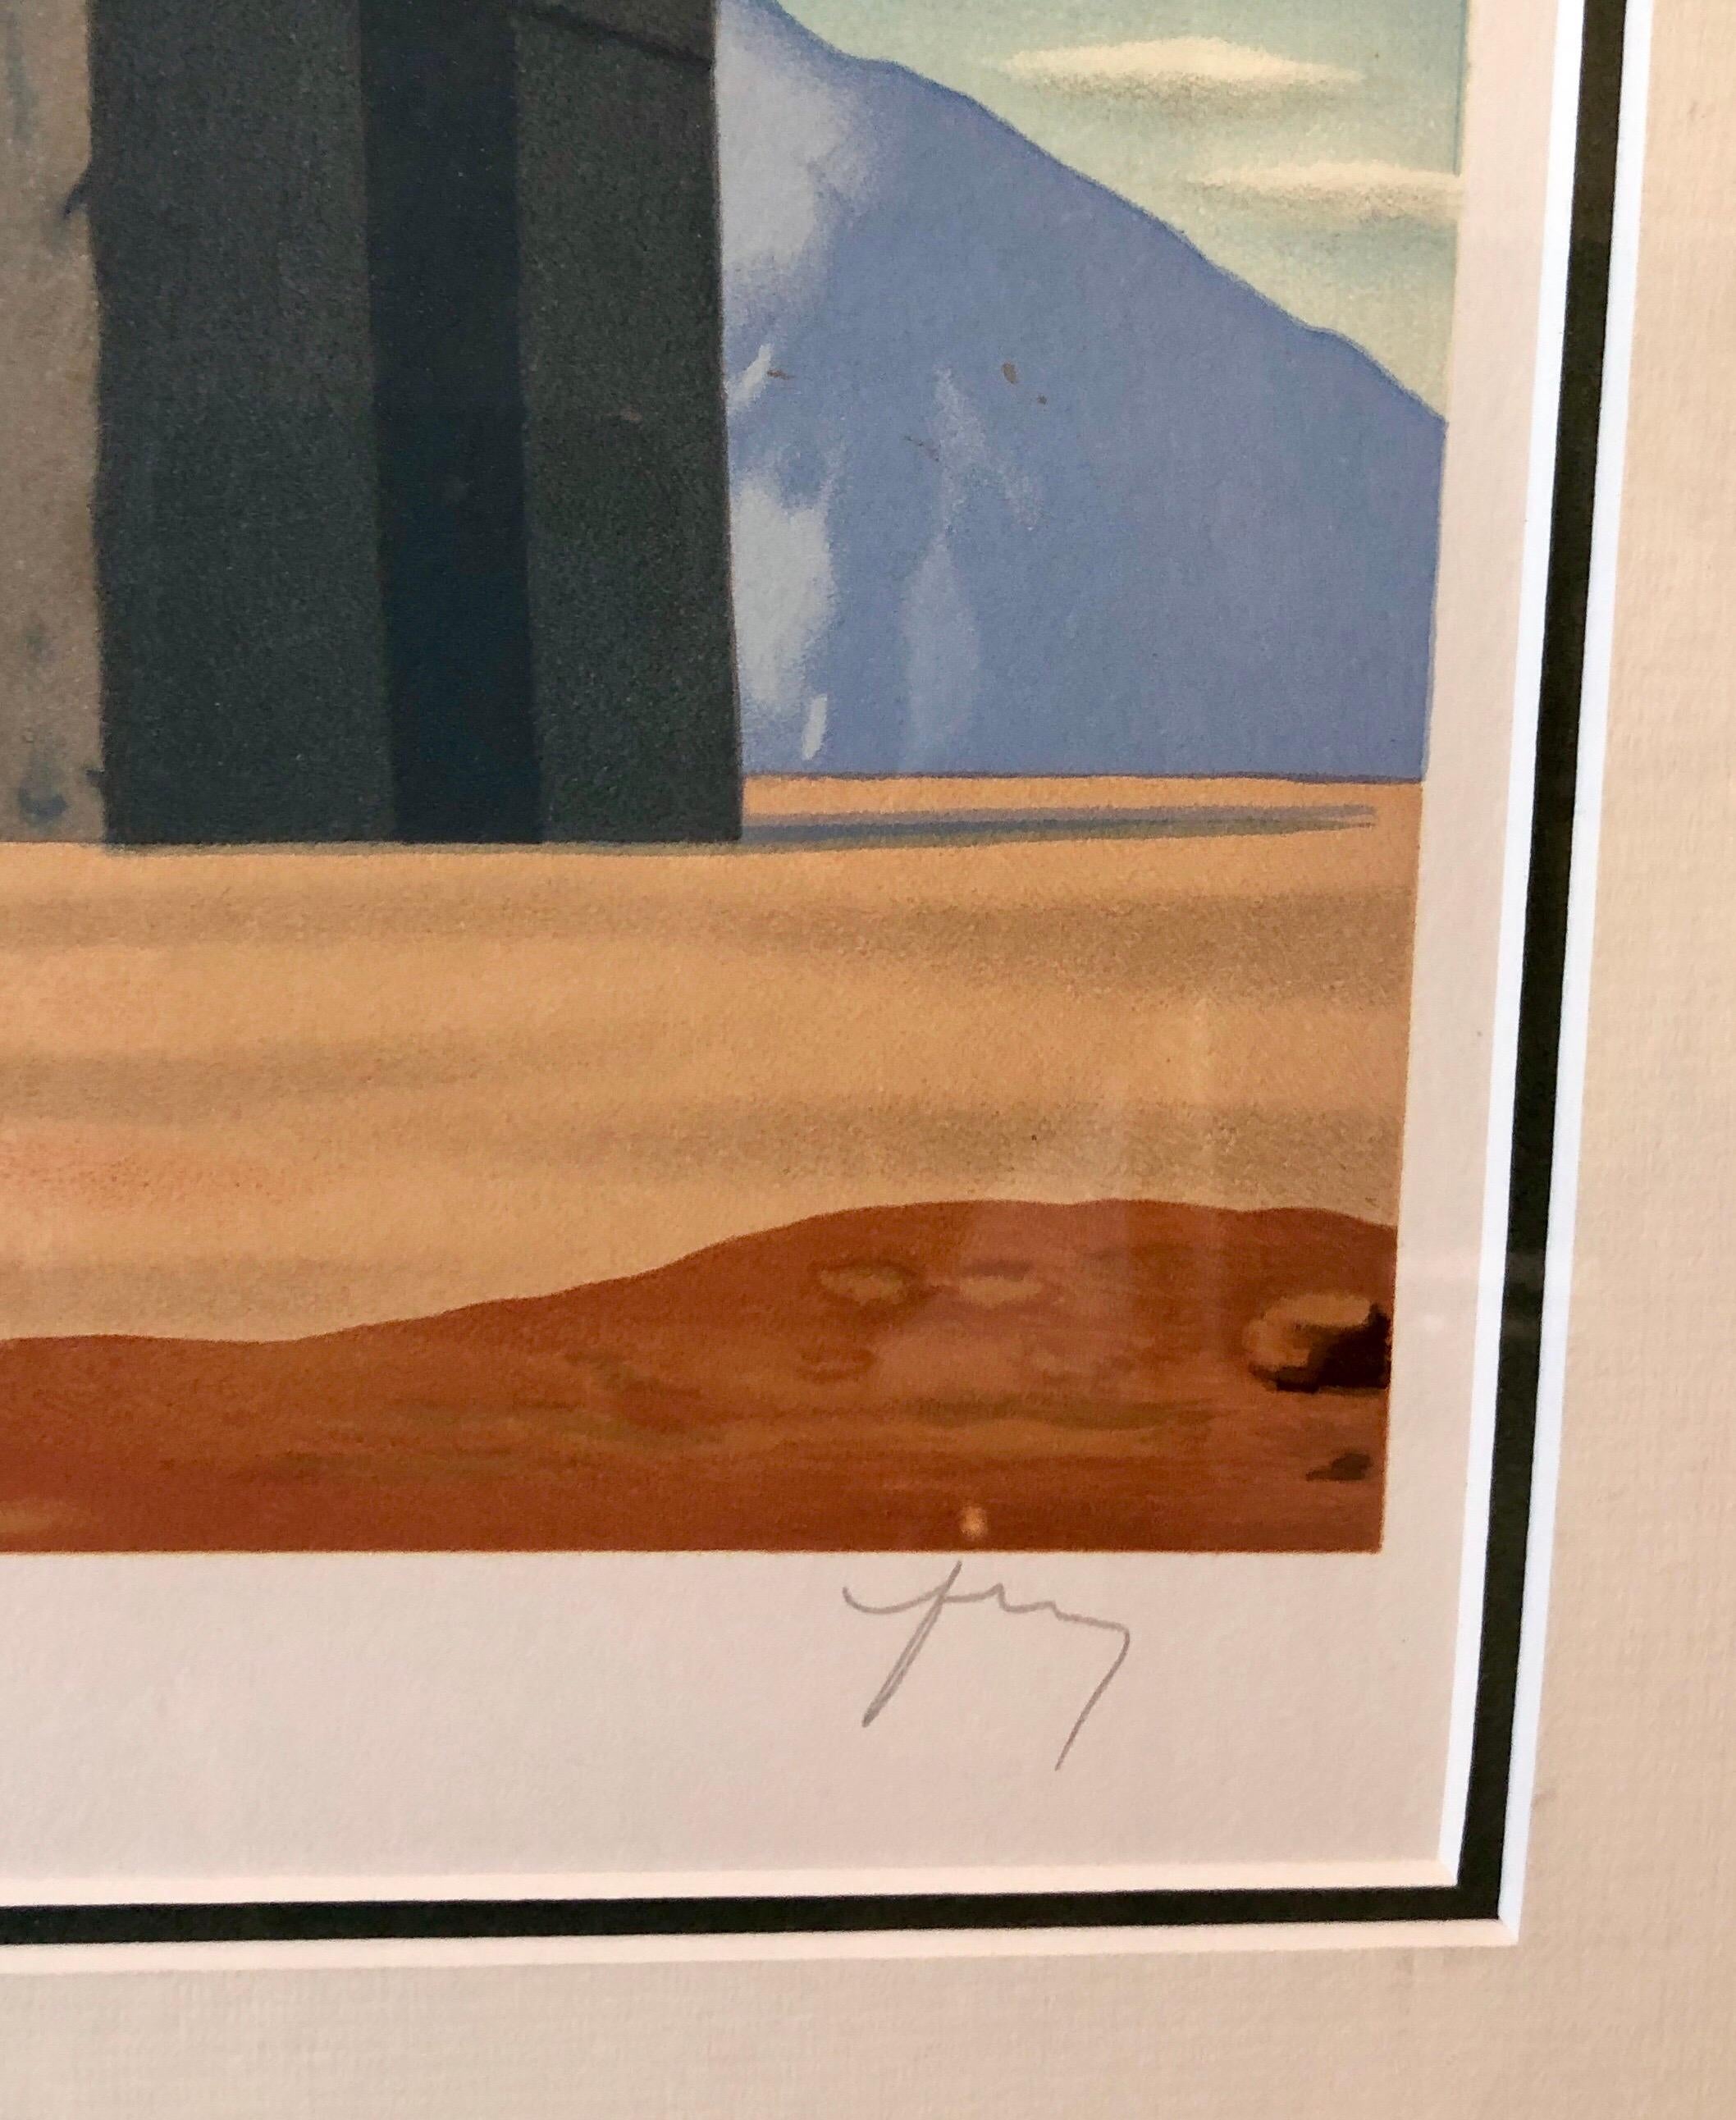 Artistics : René Magritte (d'après), Belge (1898 - 1967)
Titre : (extrait des Enfants Trouvés) Les Claires-Voies d'un Jeune Regard Embaument La Fête d'un Vieil Arbre
Année de la peinture originale : 1952
Année d'impression de la lithographie :